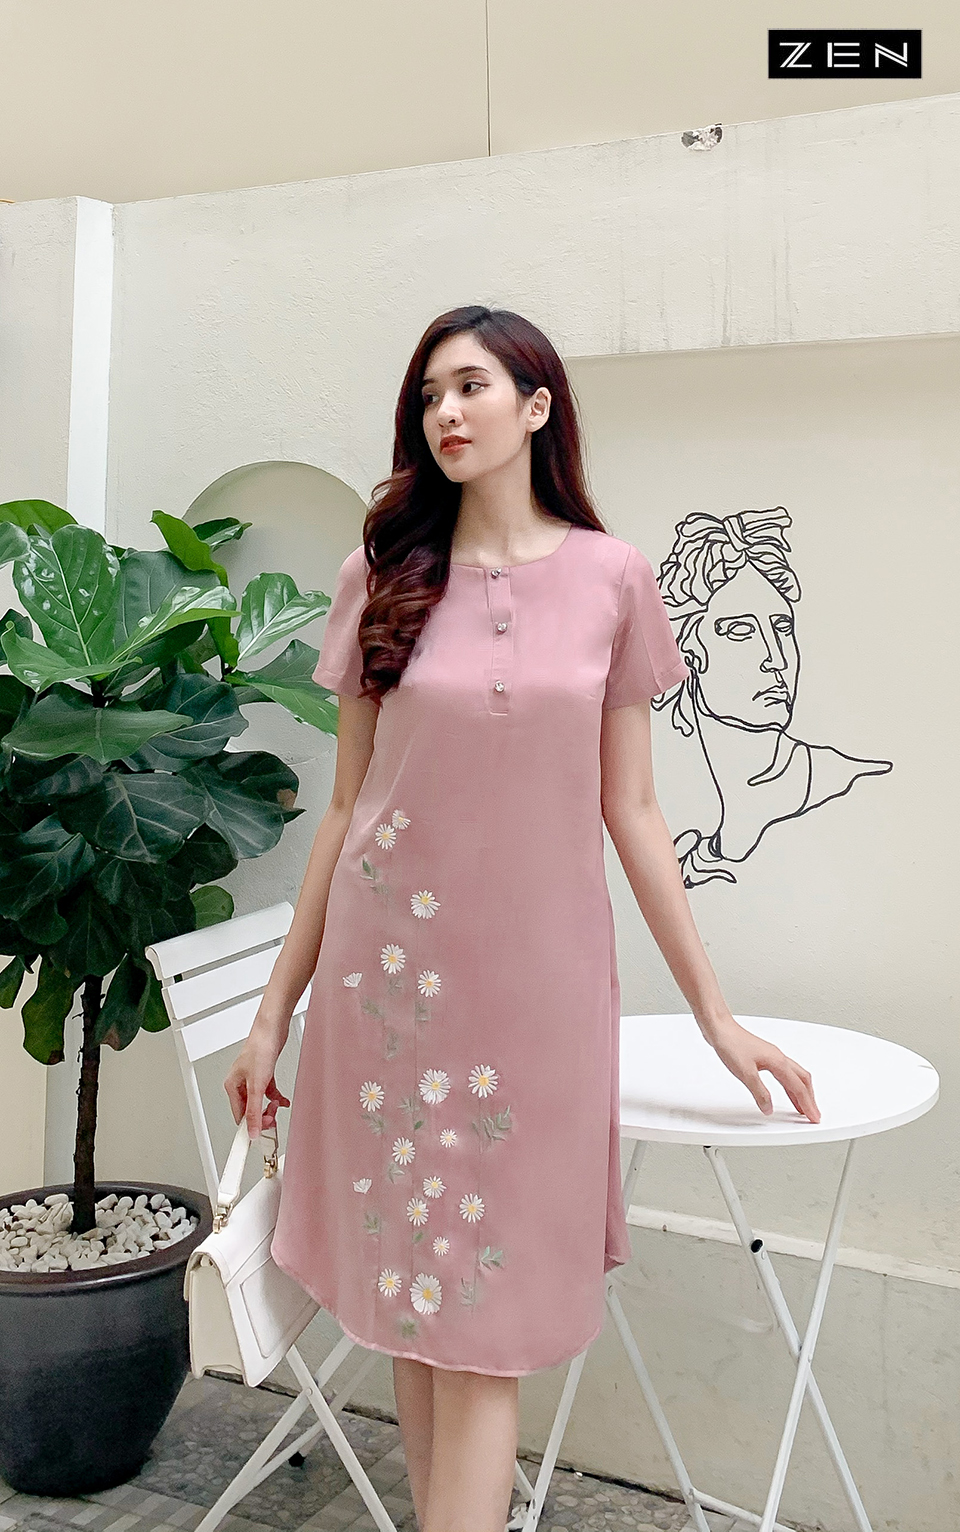 Diện váy công sở mùa hè đẹp – Việt Tiến | Miễn phí giao hàng toàn quốc |  Đại lý Việt Tiến TpHCM